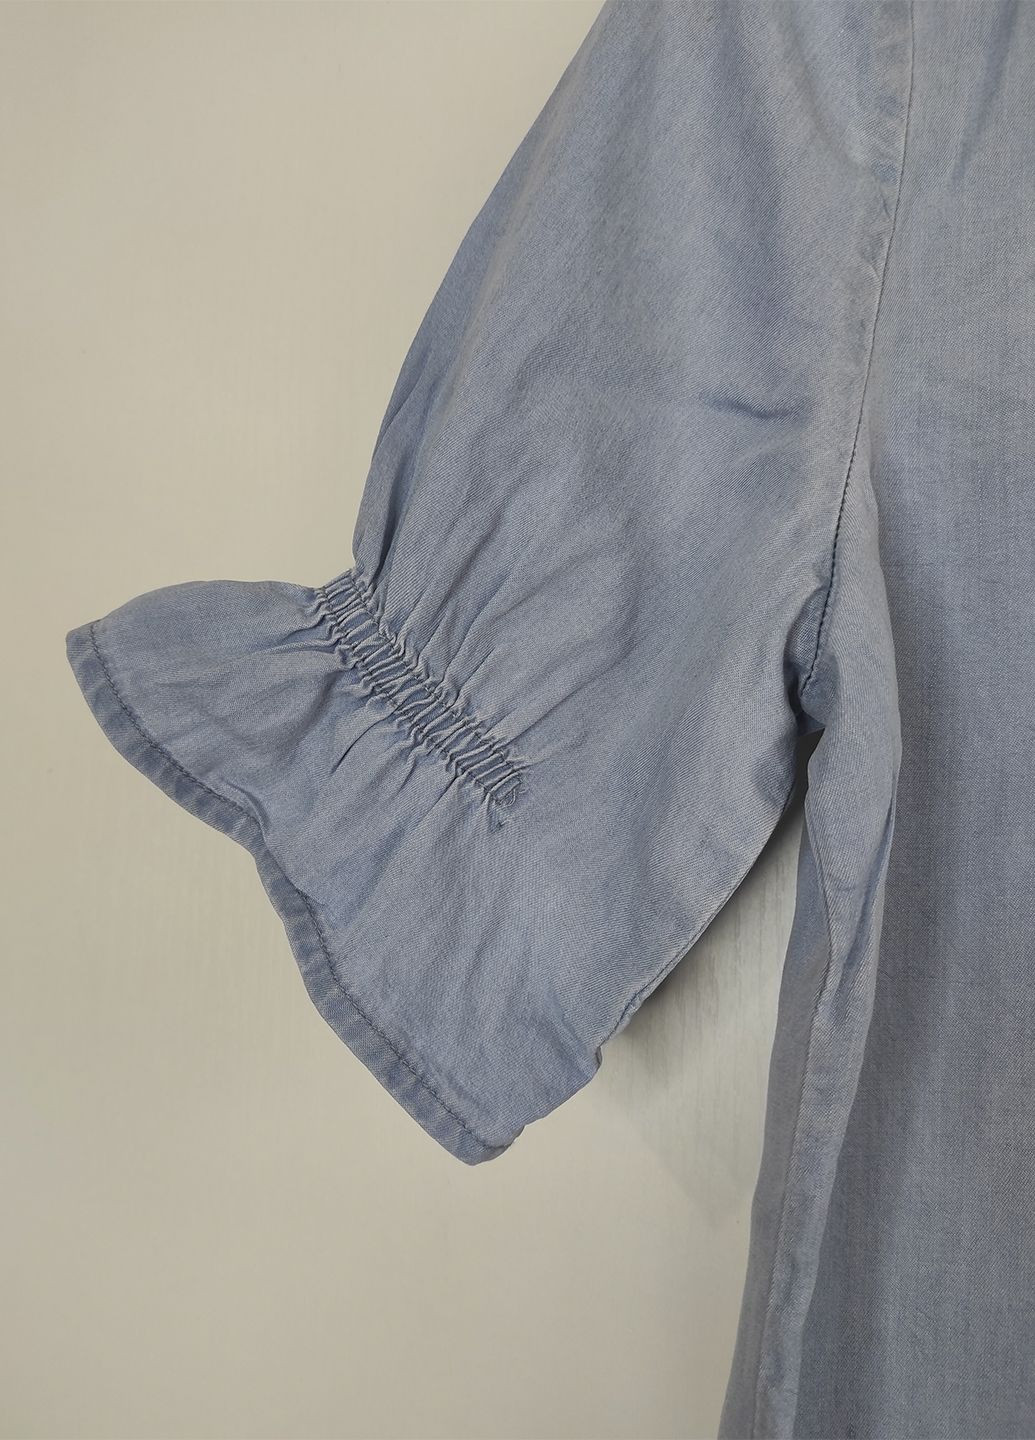 Голубая летняя блуза под джинс короткий рукав Esmara